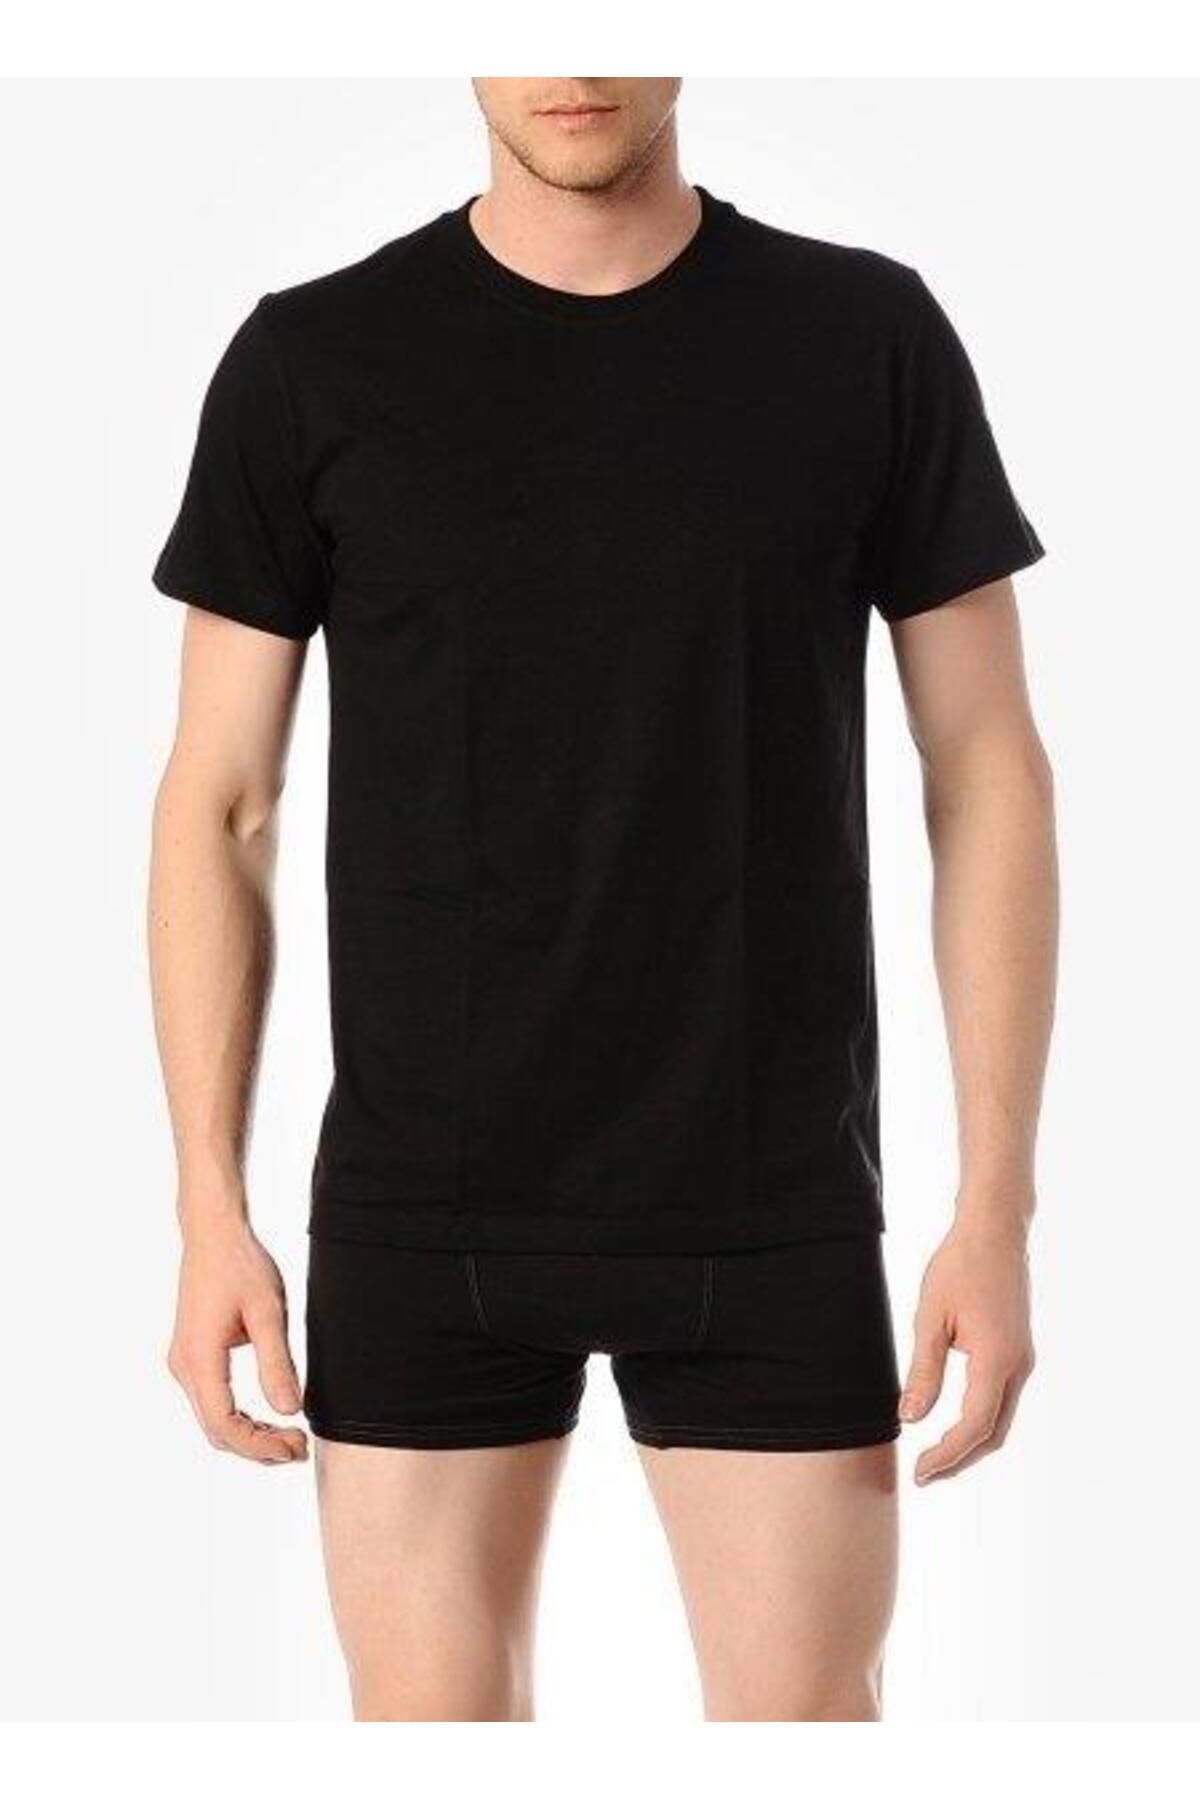 Çift Kaplan 947 Erkek Süprem T-shirt Siyah